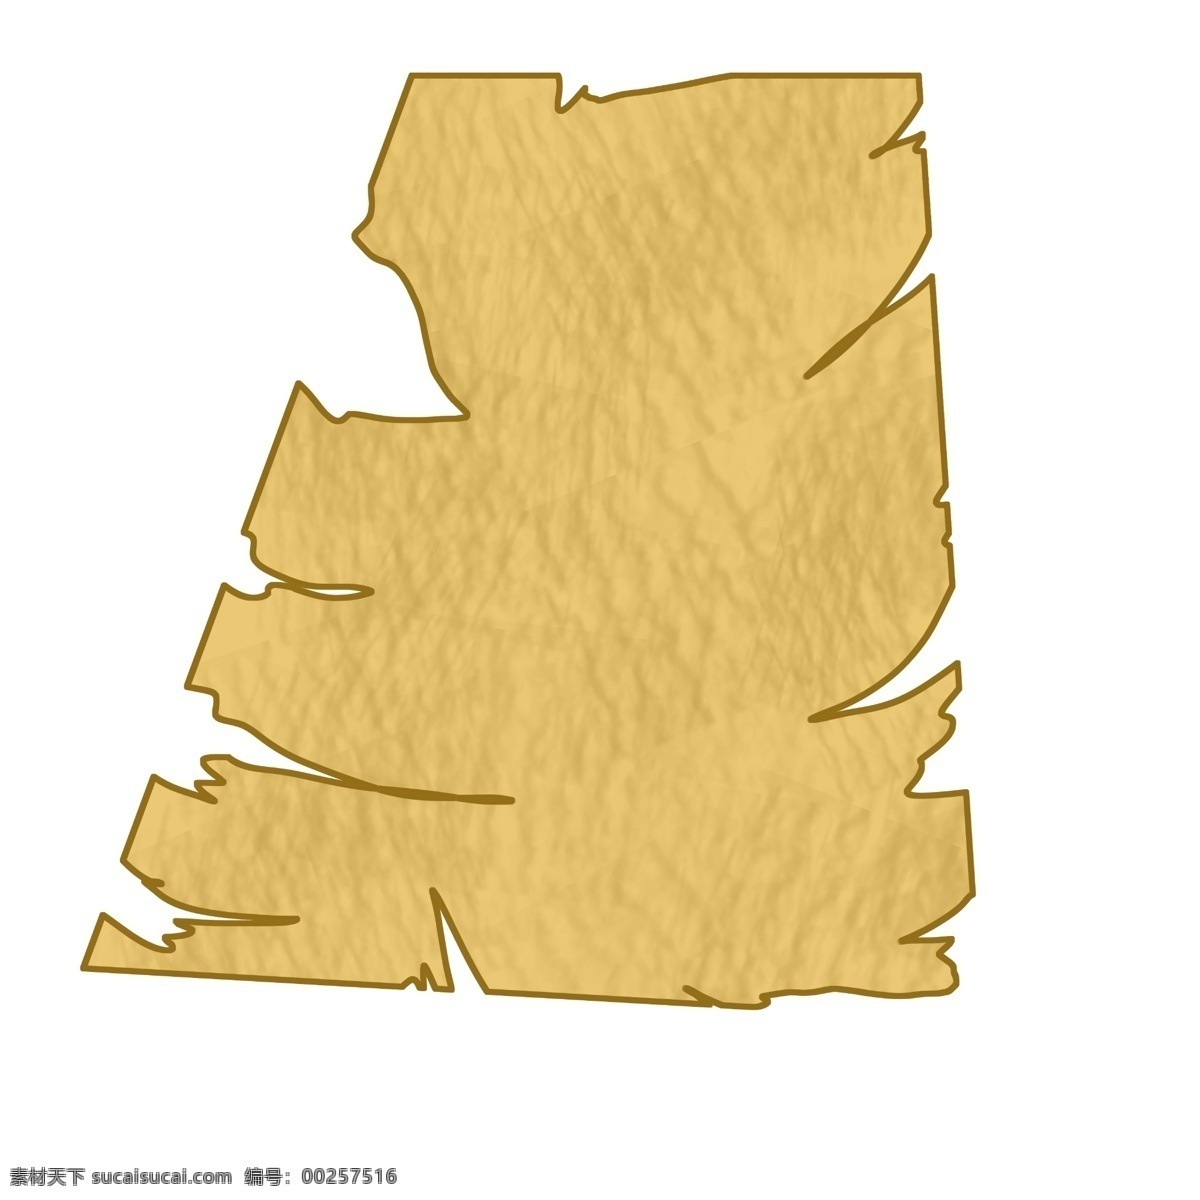 撕裂 黄色 纸张 插画 撕裂的纸张 黄色纸张 撕裂的纸 不规则形状 破旧的纸张 纸张装饰插画 纸条